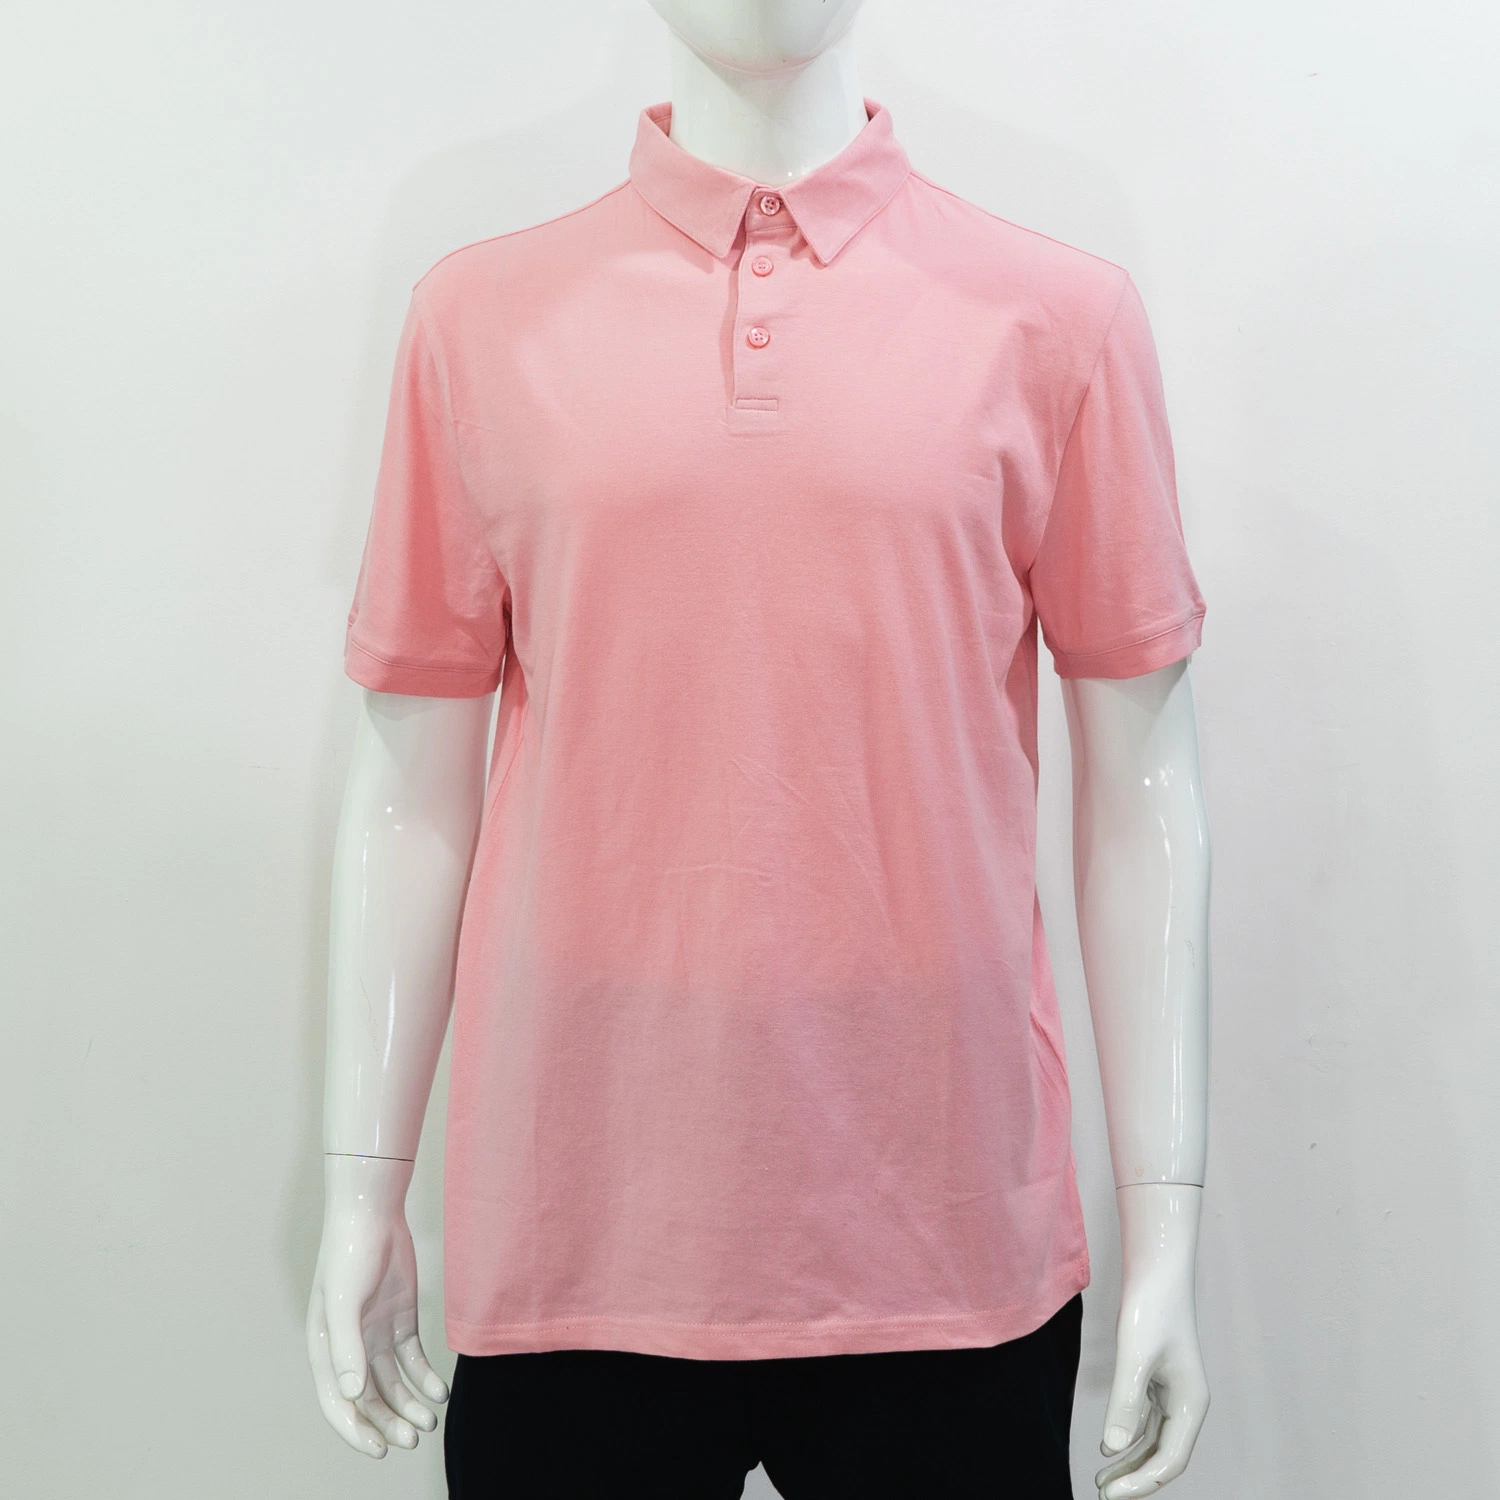 Rosa Basic T-Shirt Custom Stickerei Print Kurzarm Top Großhandel/Lieferant Shirt Hochwertige Bekleidung Herren Casual Cotton Polo